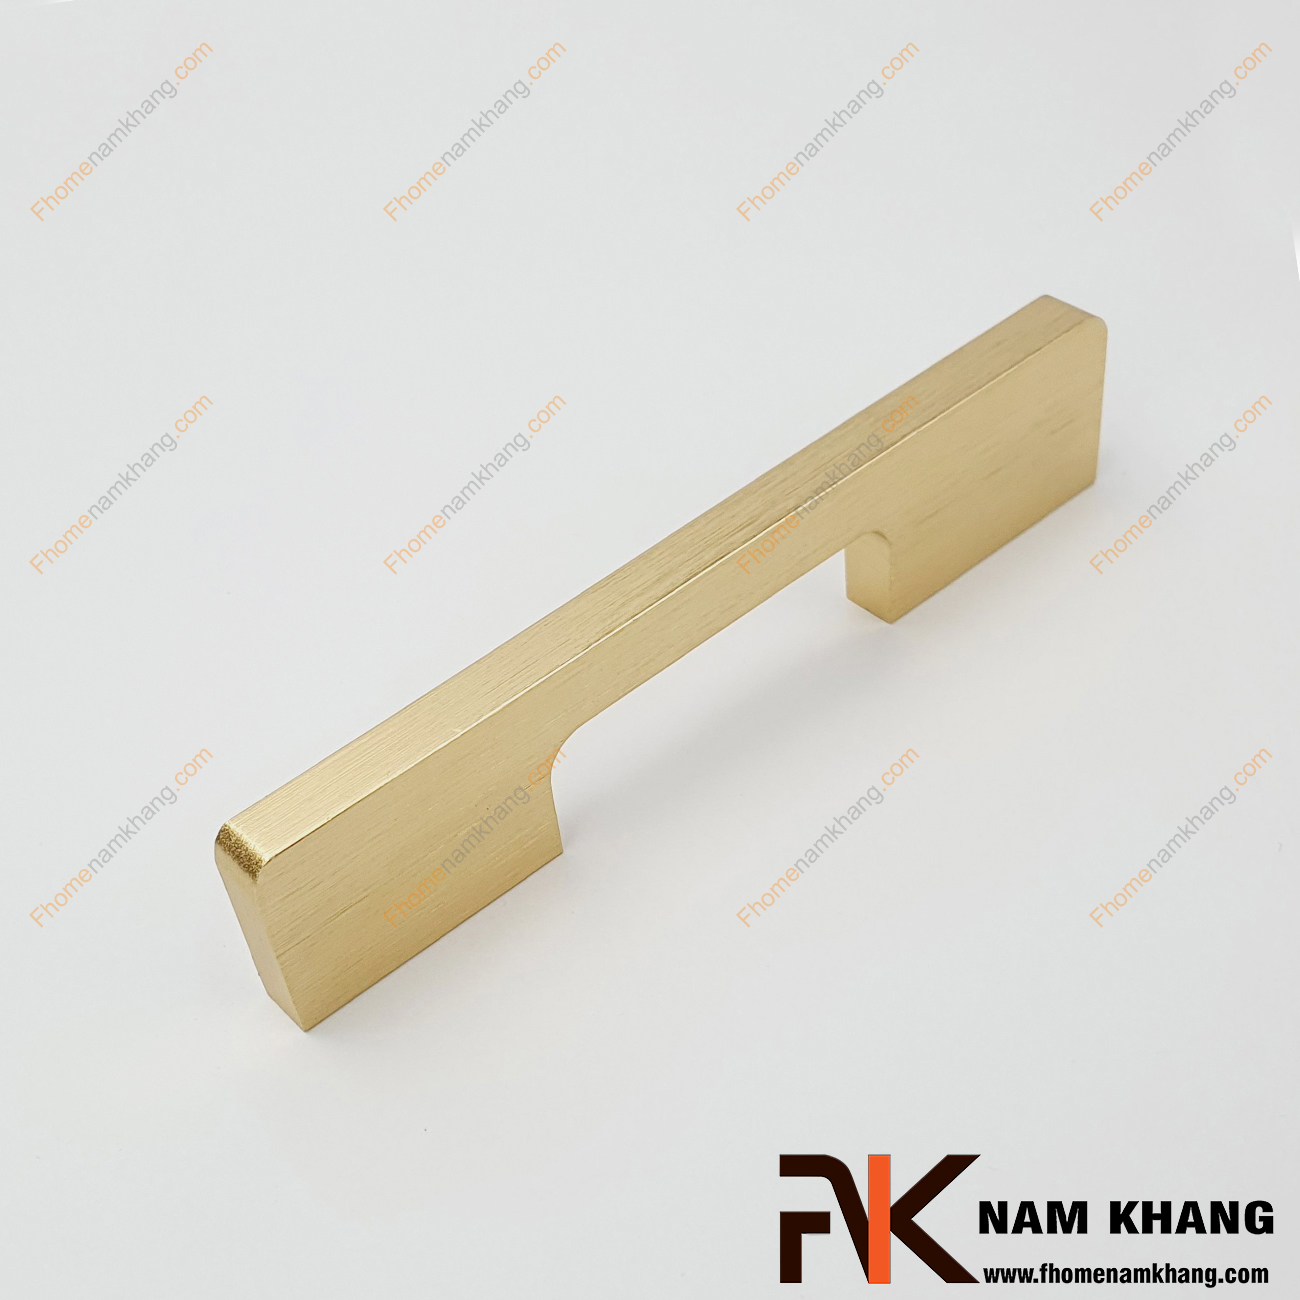 Tay nắm tủ dạng thanh màu vàng xước NK235L-V là một dòng tay nắm tủ theo bộ với nhiều kích thước được sử dụng trên một hoặc nhiều loại phong cách tủ khác nhau tùy nhu cầu thiết kế.